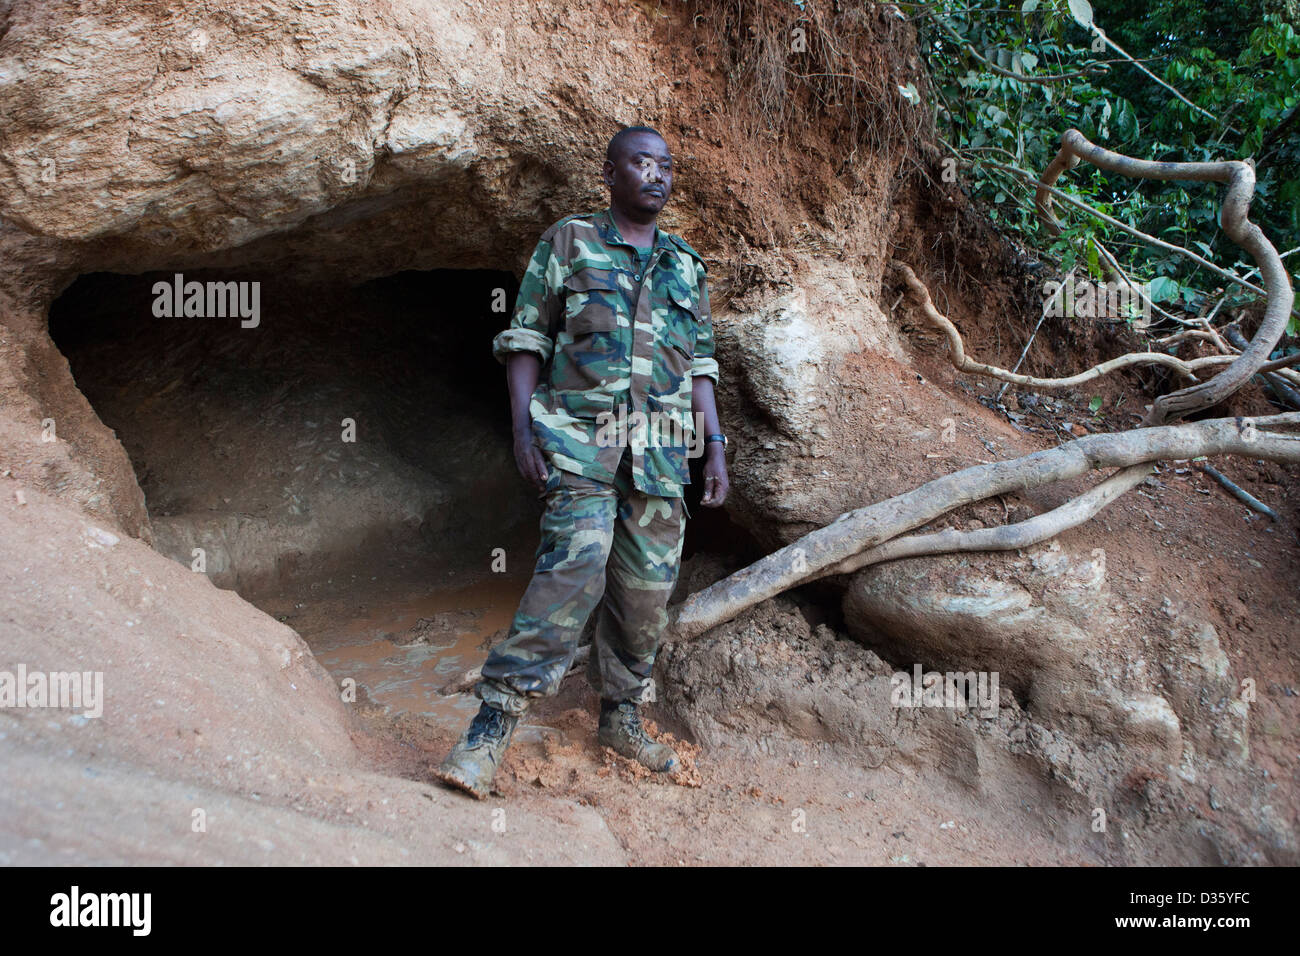 Kongo, 26. September 2012: Victor Mbolo neben einem Elefanten-Leckstein am Fluss Dja.  Waldelefanten kommen hier regelmäßig zu Mineralien, die sie benötigen. Stockfoto